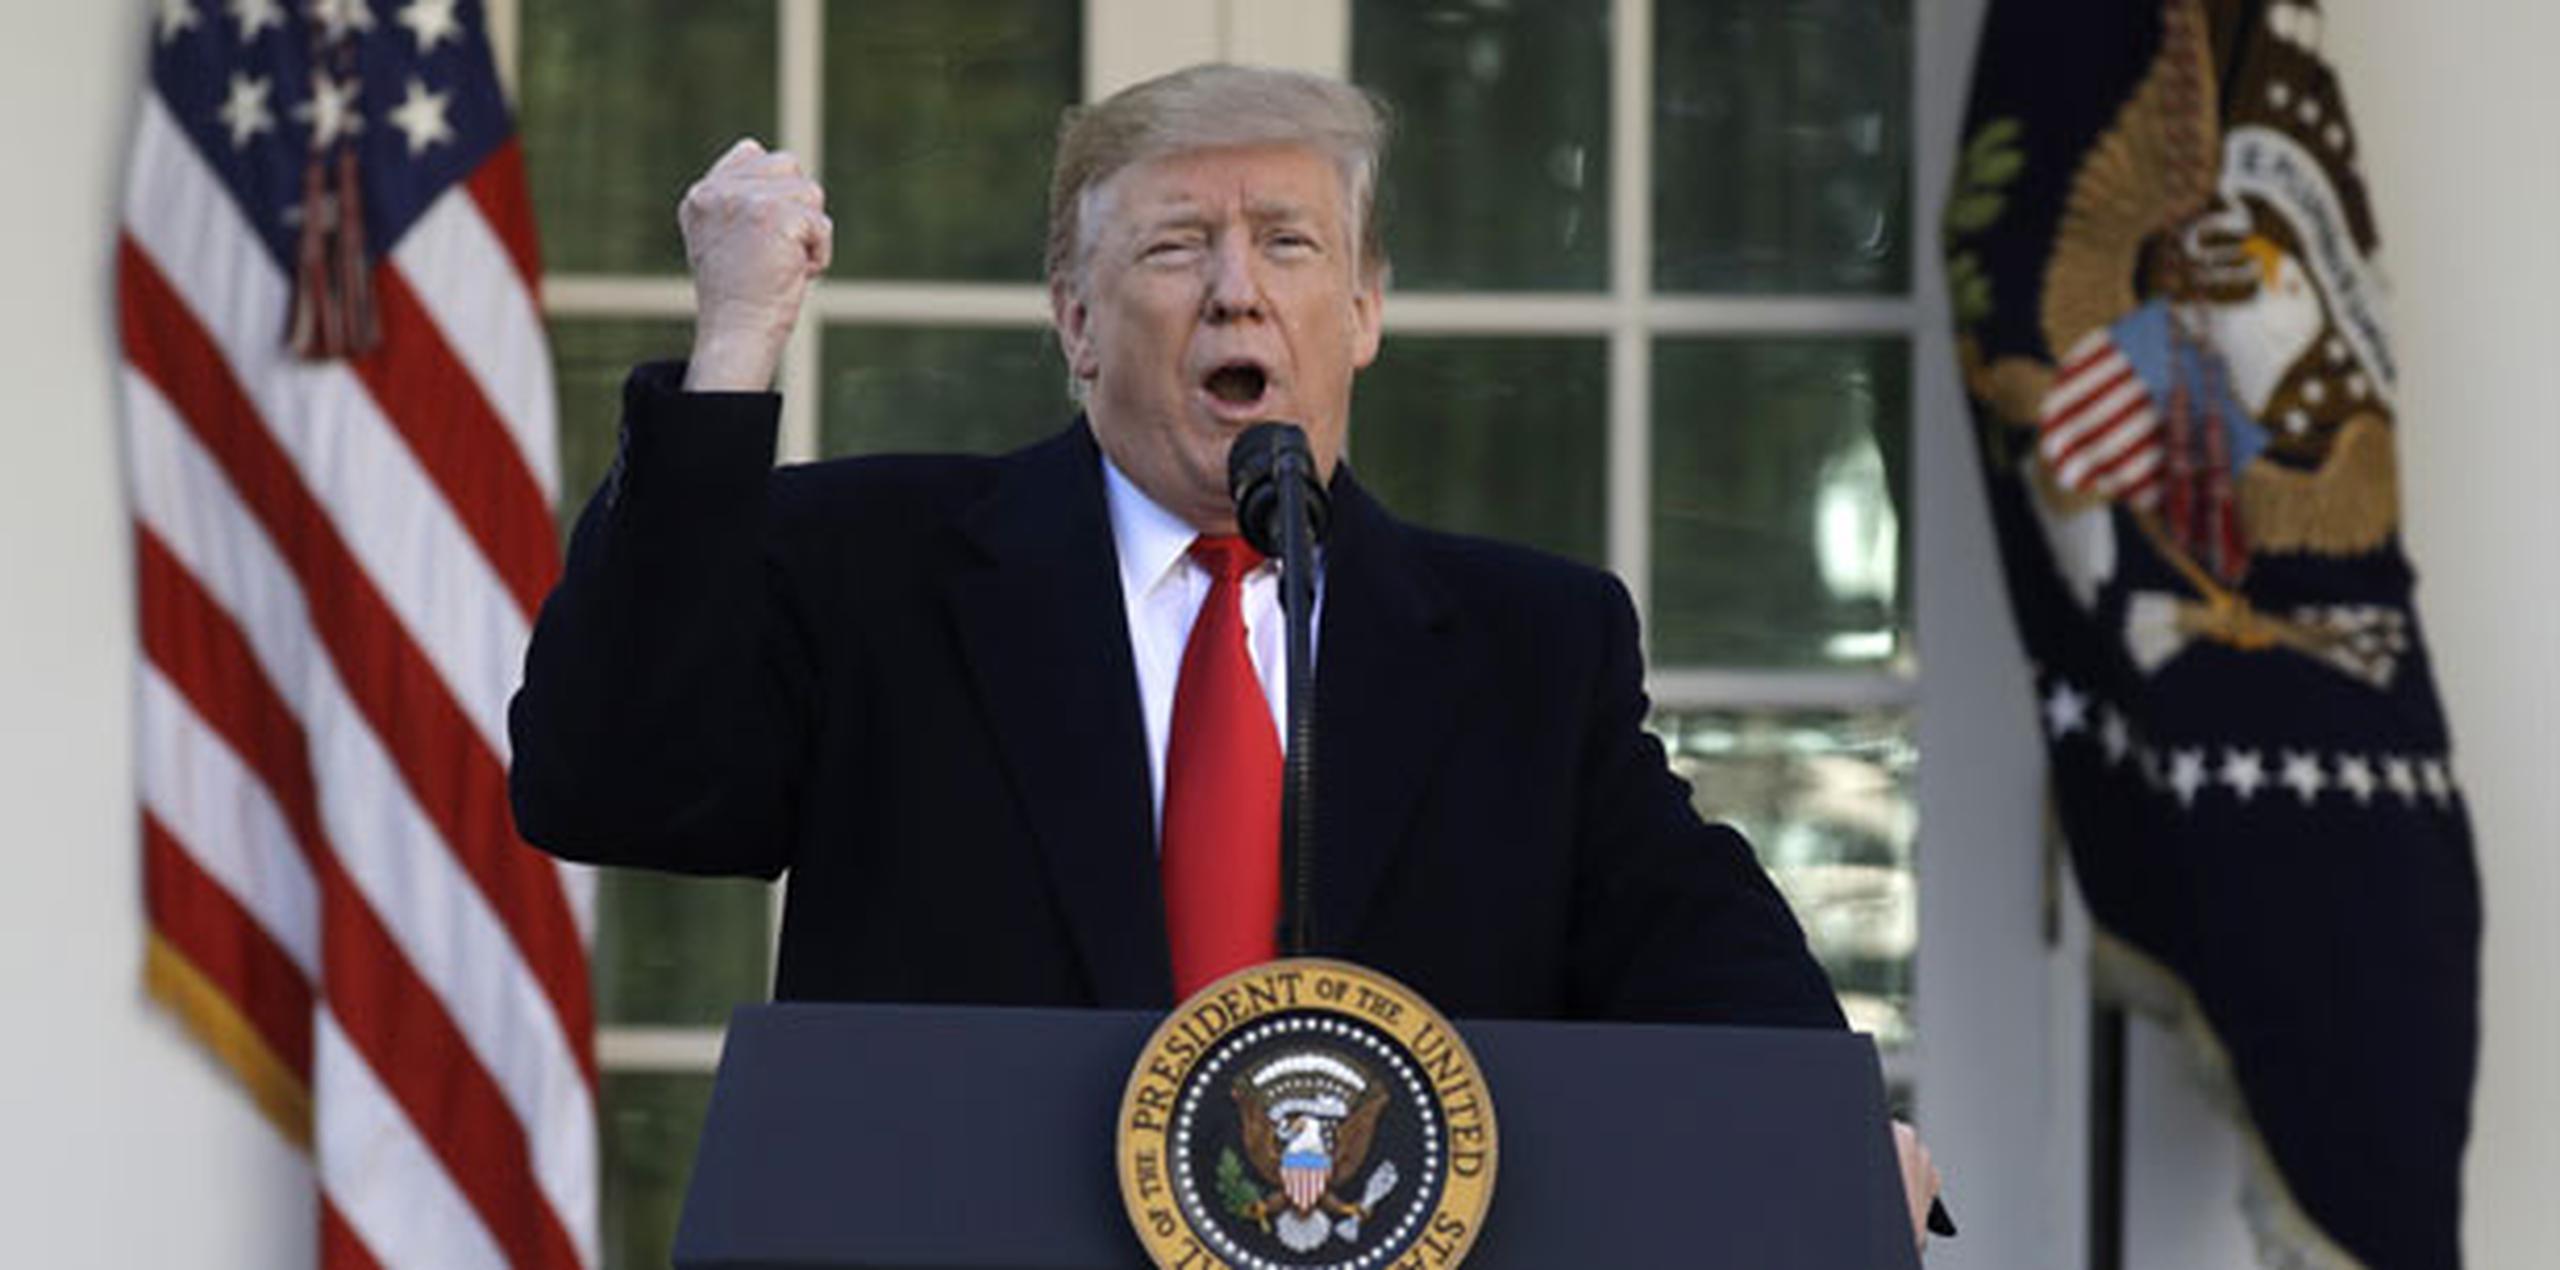 La comentarista conservadora Ann Coulter, una gran partidaria del muro, describió a Trump como el “cobarde más grande” que ha ocupado la Oficina Oval. (AP)